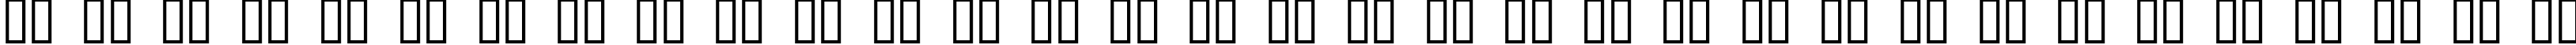 Пример написания русского алфавита шрифтом Roller Coaster